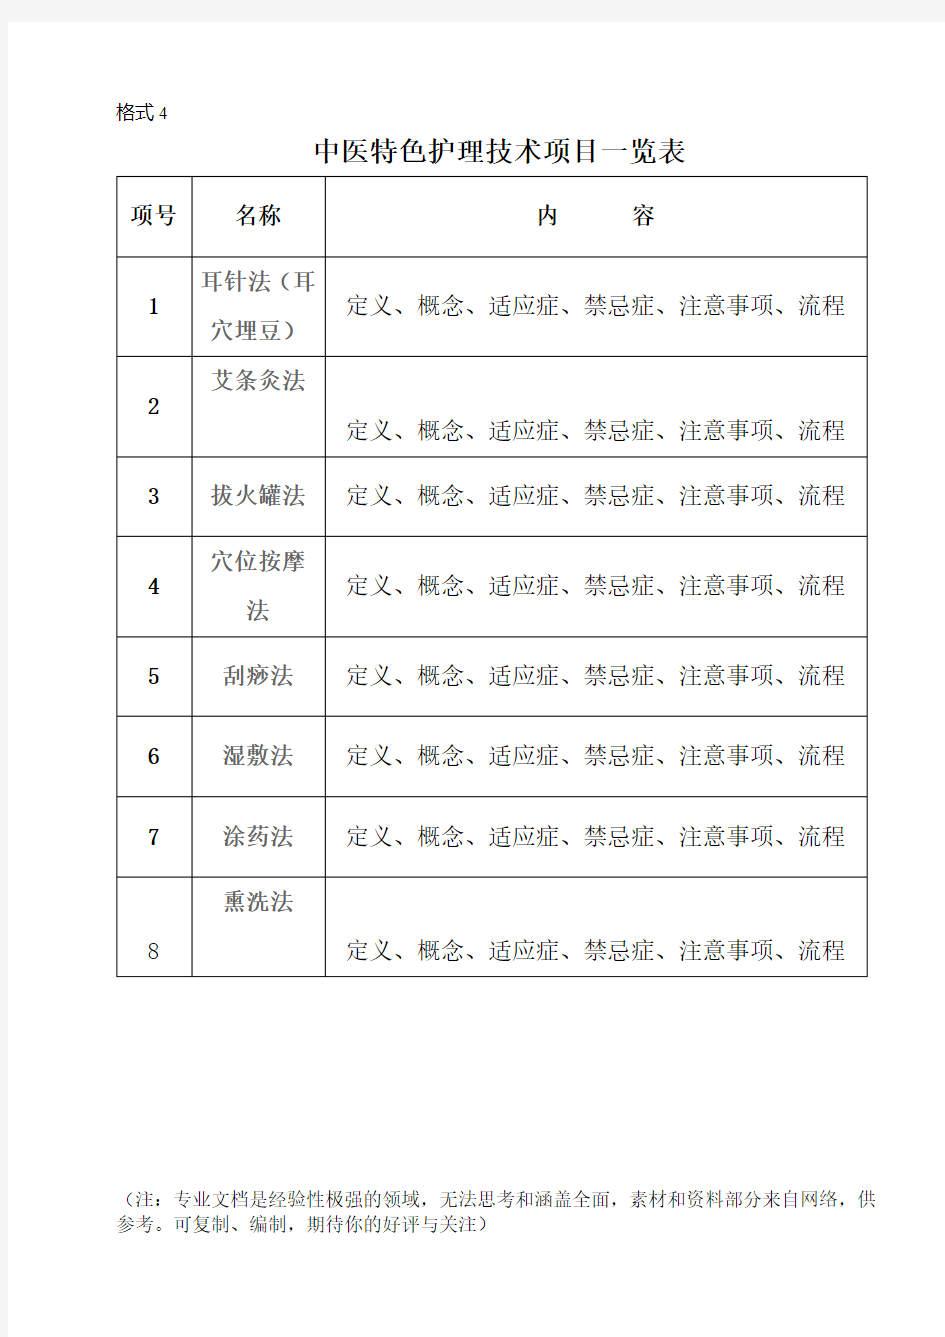 中医特色护理技术项目一览表